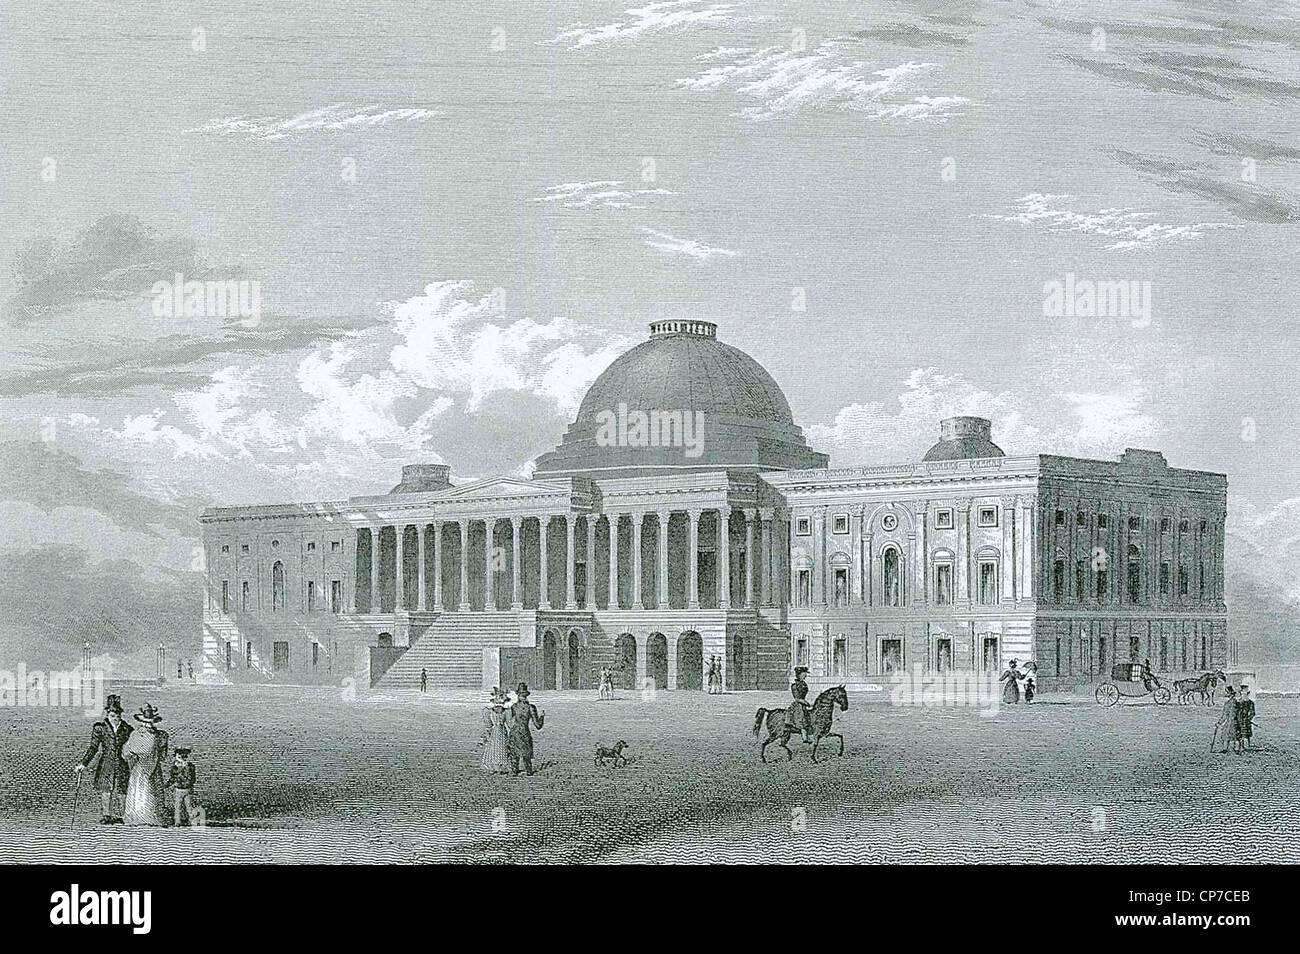 Grabado del edificio del Capitolio de los Estados Unidos, Washington D.C, EE.UU. grabada por Joseph Andrews en 1840. Foto de stock